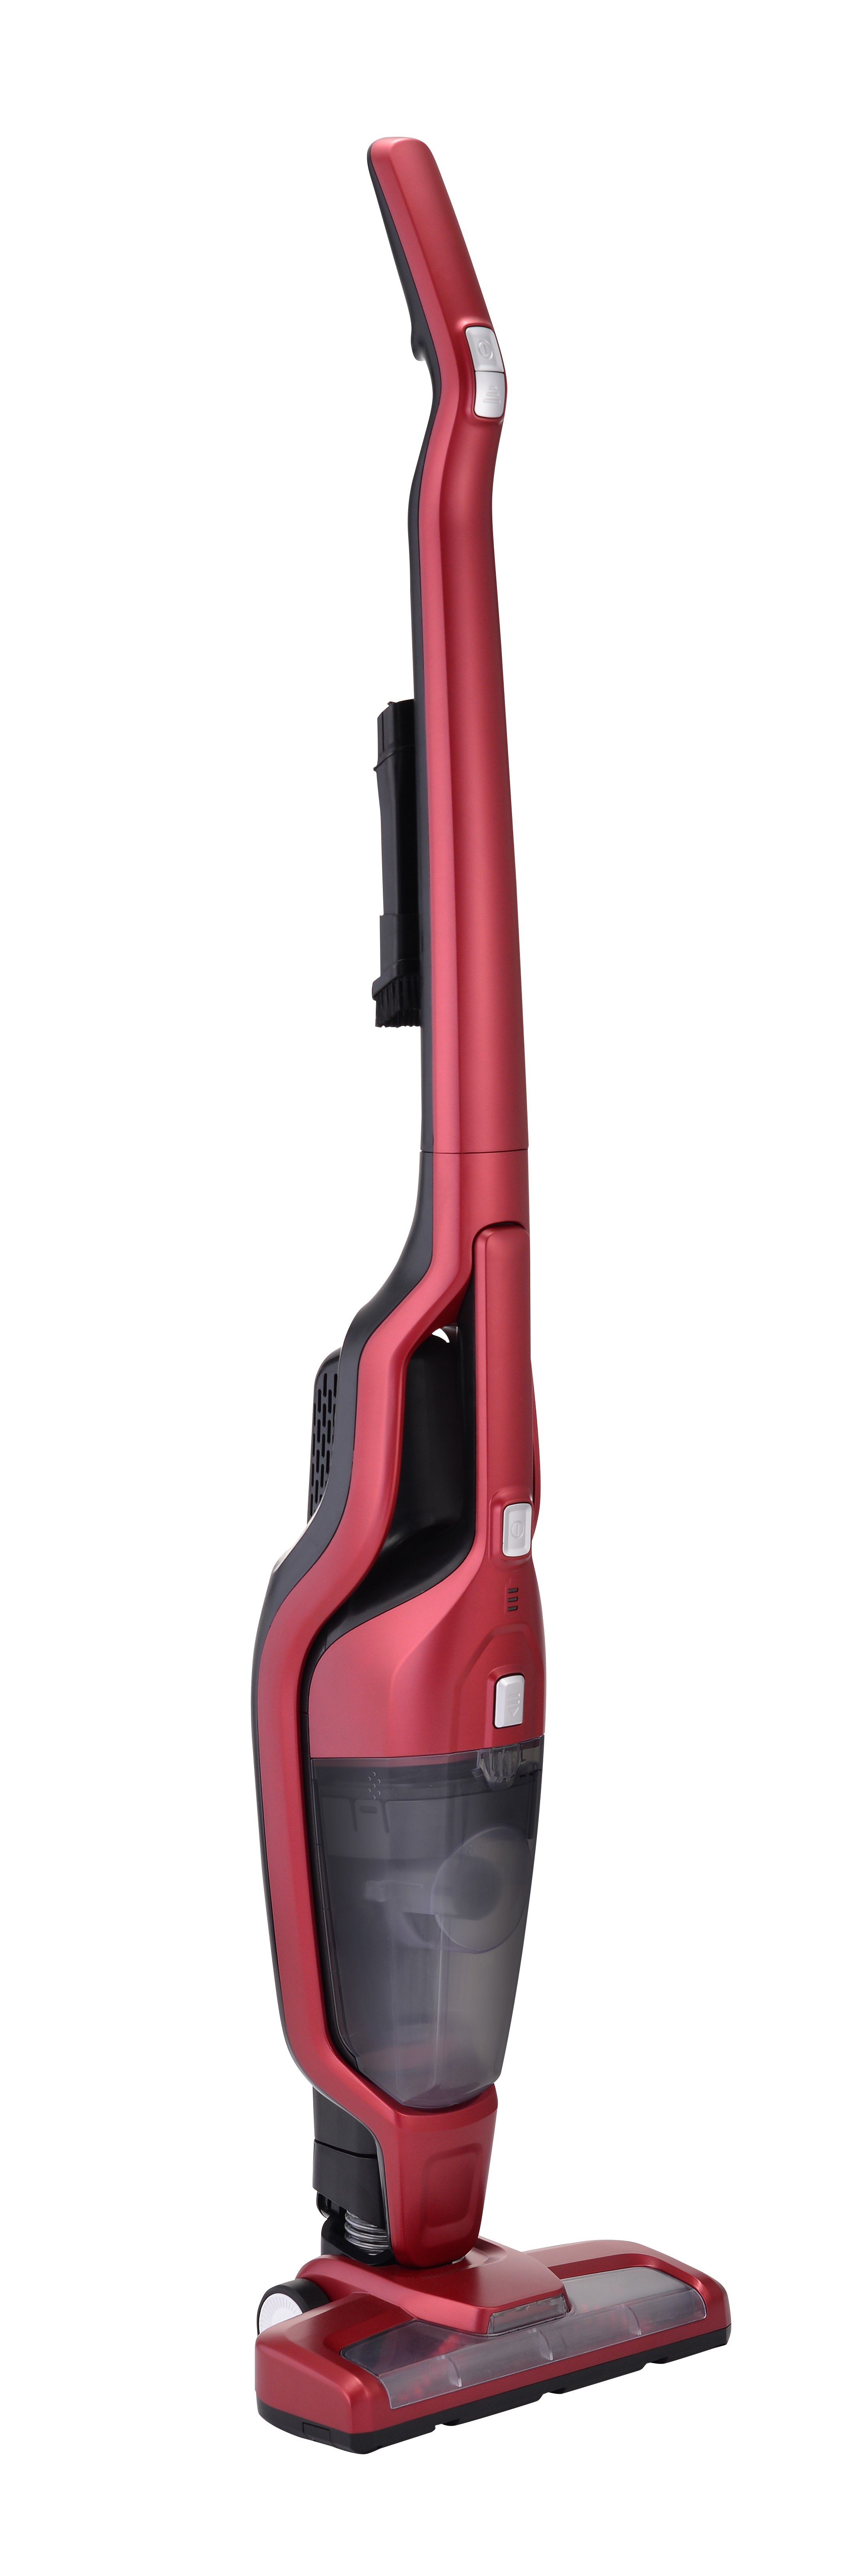 CJ192 2-in-1 Cordless Stick Vacuum Cleaner